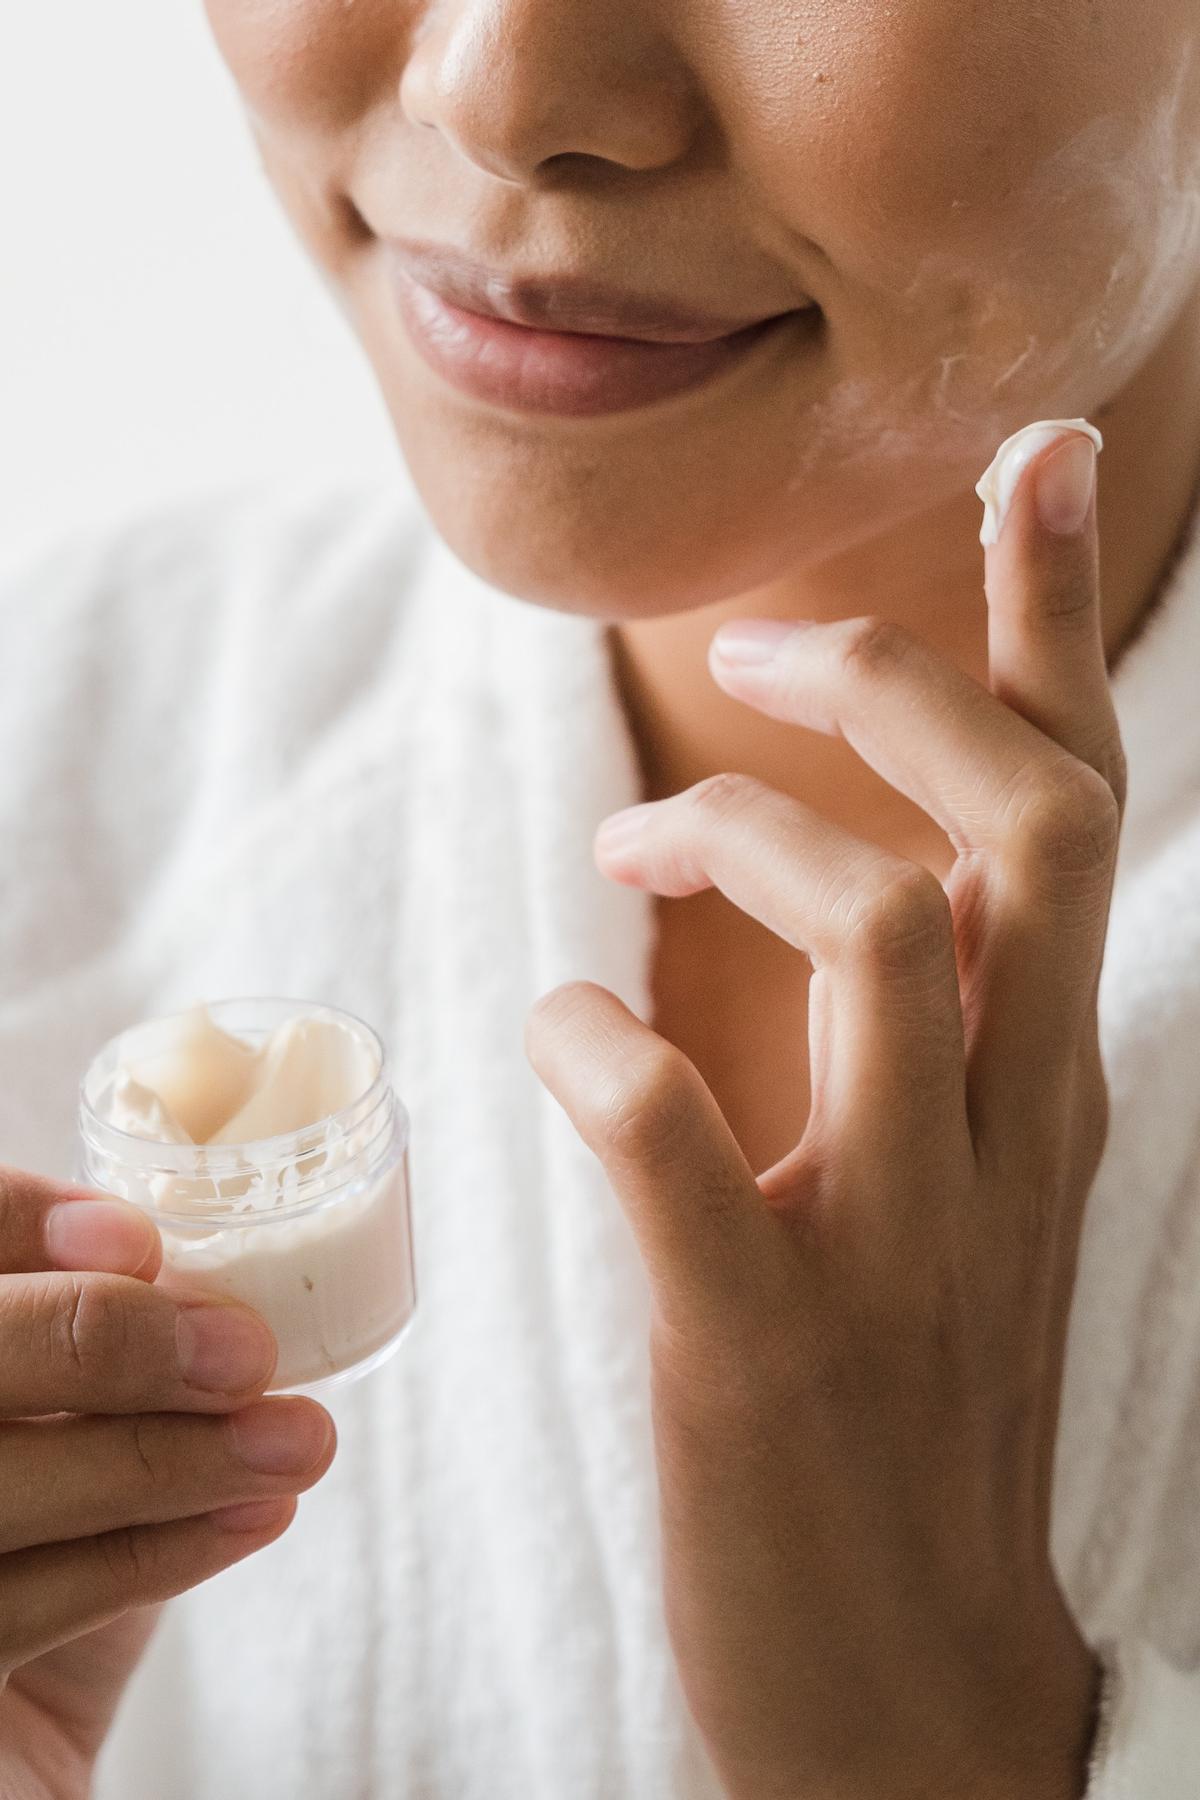 Las cremas con ácido hialurónico ayudan a reducir las arrugas.